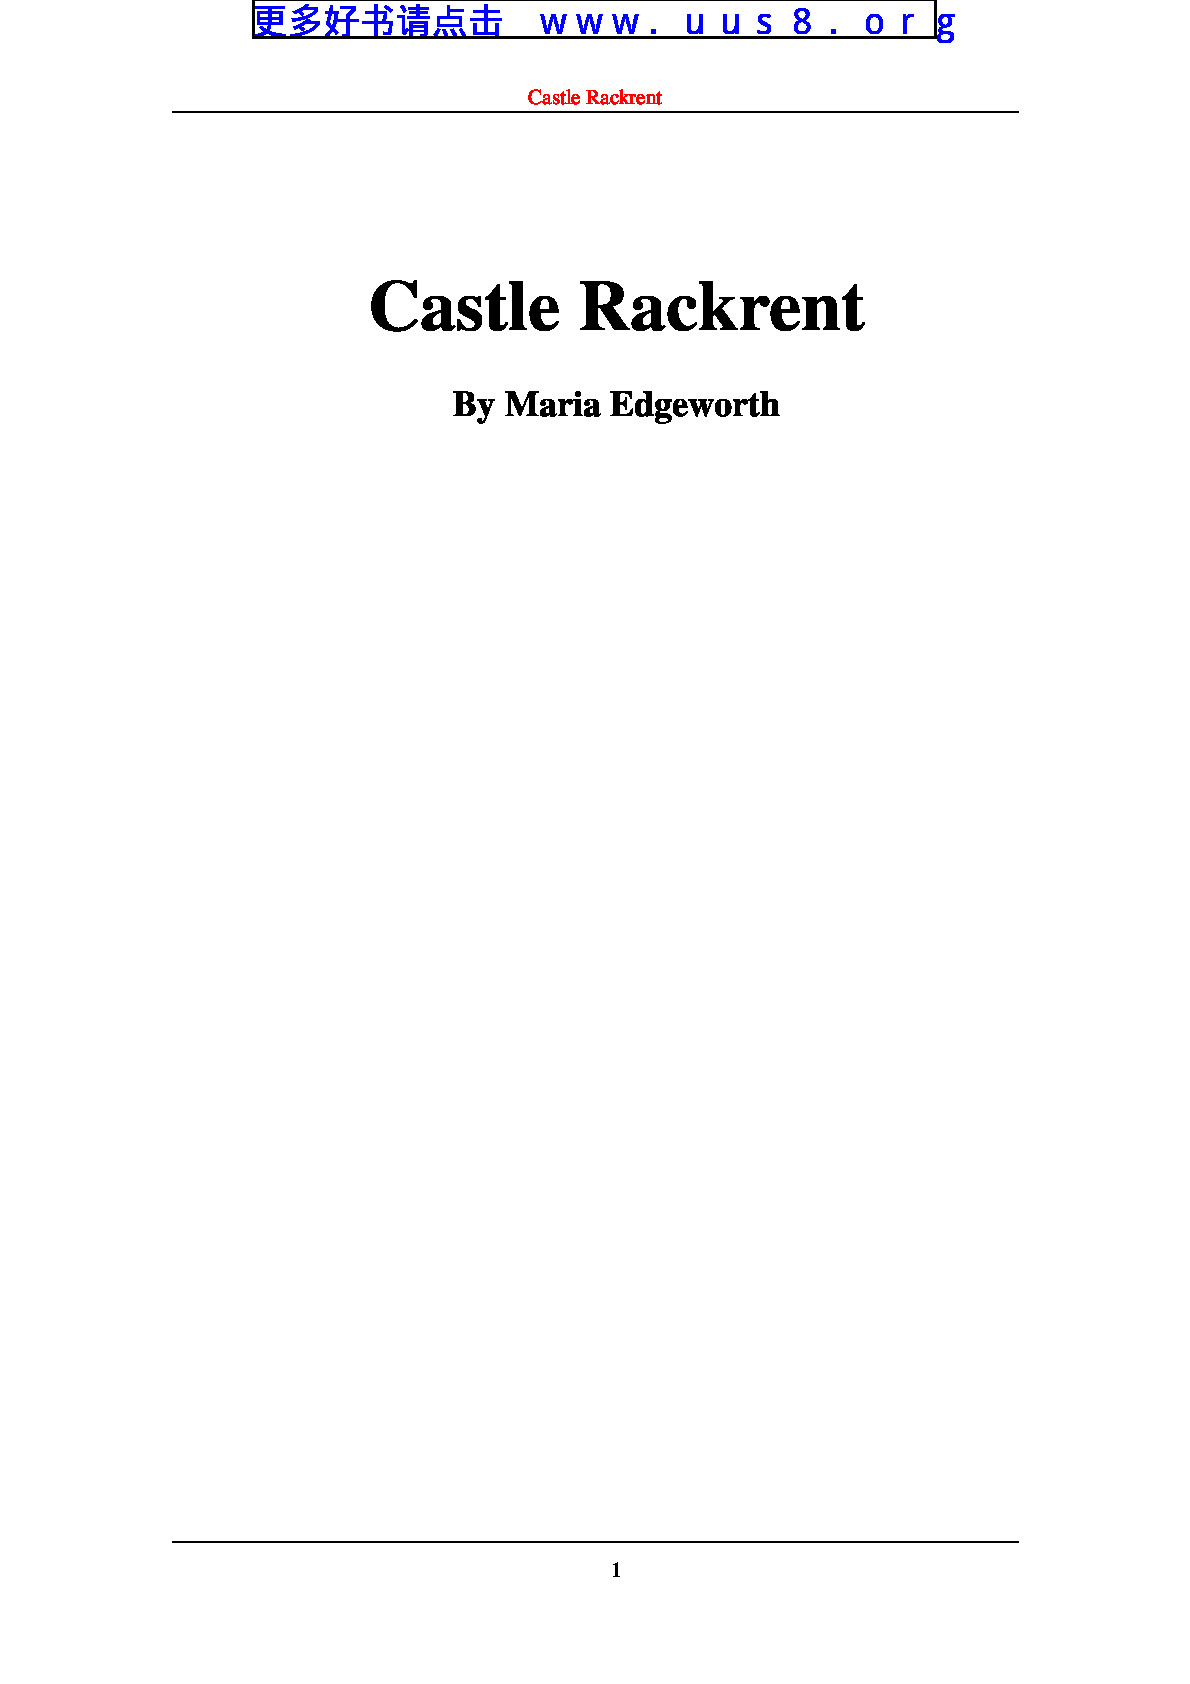 Castle_Rackrent(拉克伦特堡)